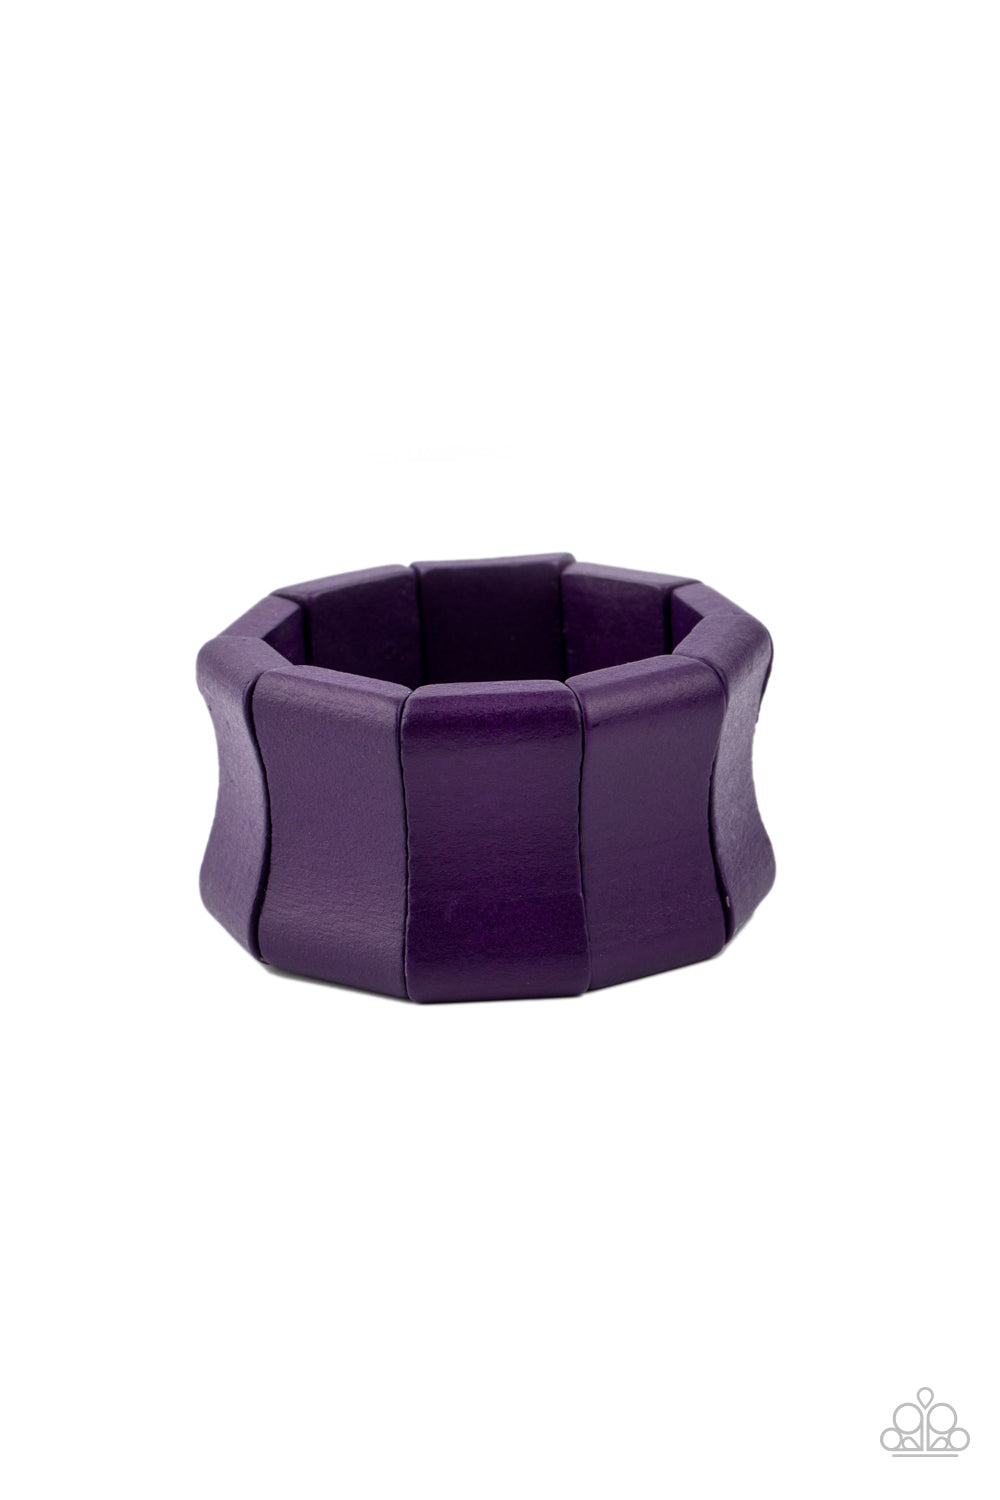 Caribbean Couture - Purple Bracelet - Paparazzi Accessories - Paparazzi Accessories 